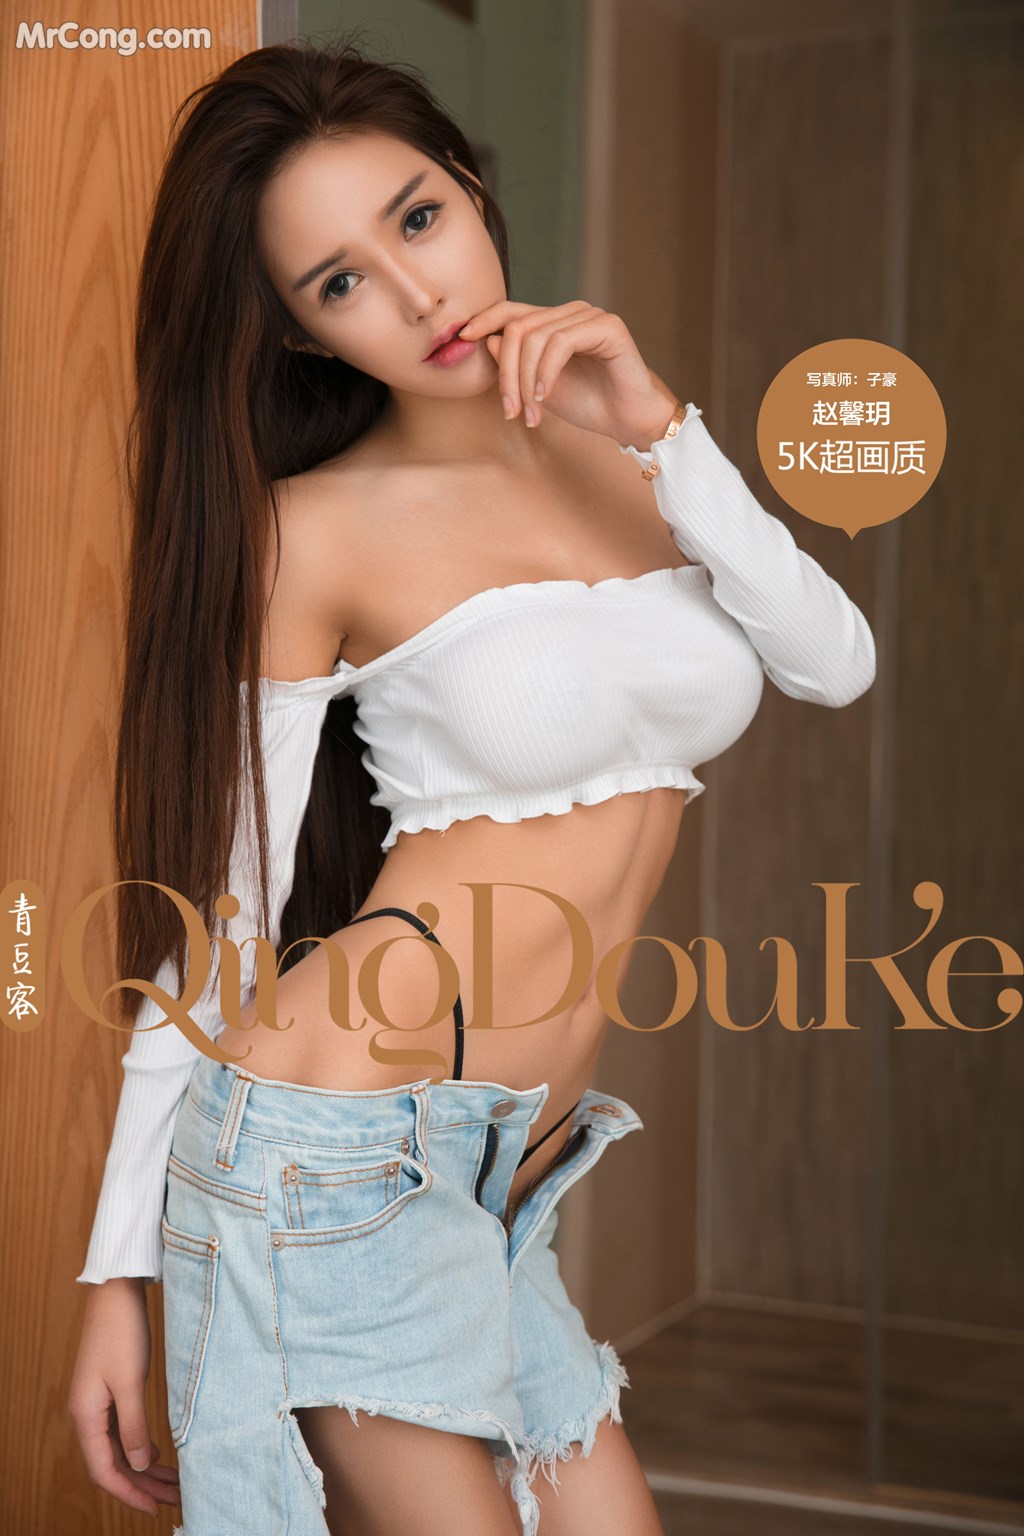 QingDouKe 2017-11-08: Model Zhao Xin Yue (赵 馨 玥) (51 photos)